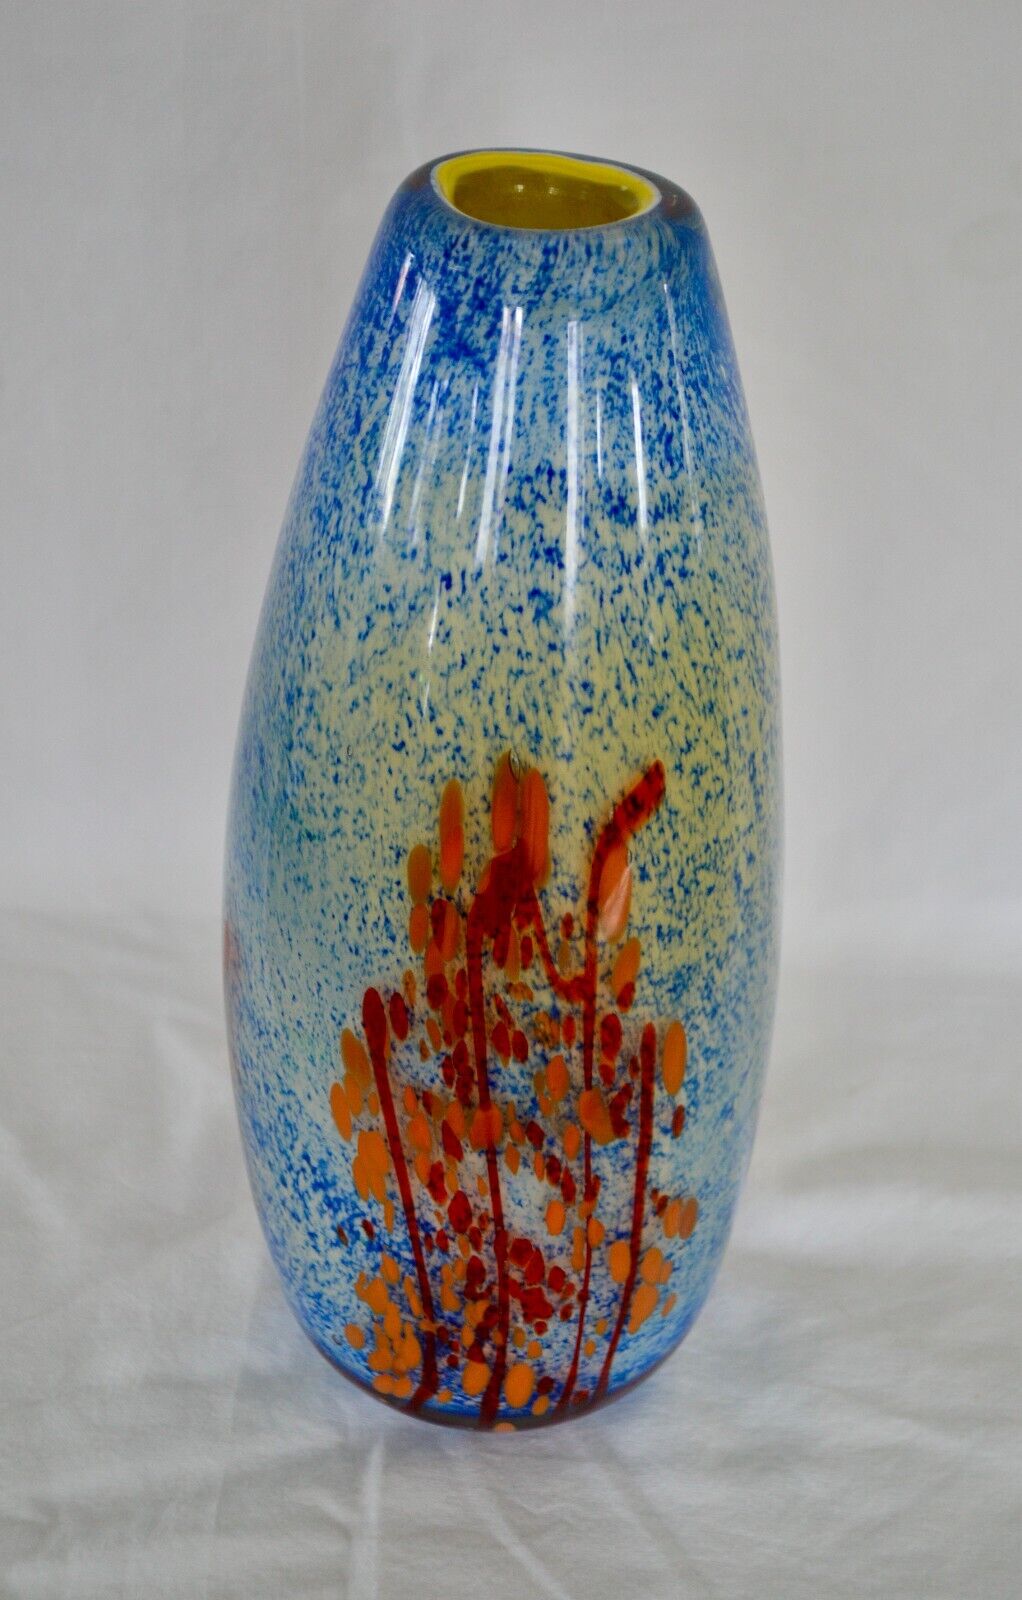 Murano Style Speckled/Confetti Millefiori Decorative Art Glass Vase